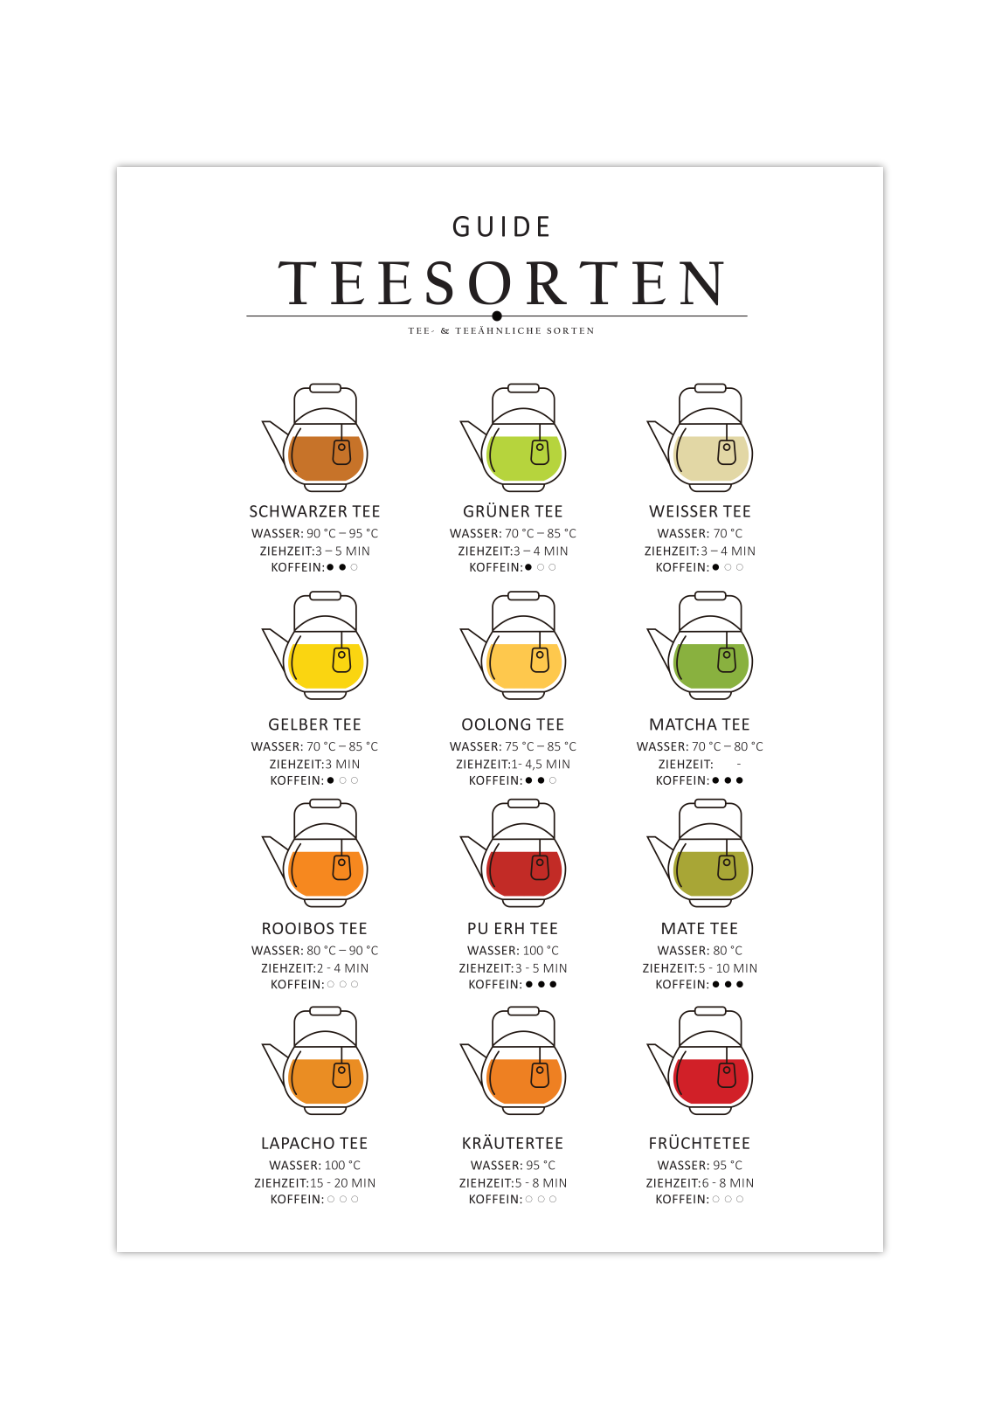 Das Poster zeigt dir verschiedene Teesorten, von echten Teearten und Tee ähnlichen Sorten. Auf dem Bild siehst du 12 Teesorten, die sechs "echten" Teesorten und sechs teeähnliche Sorten.